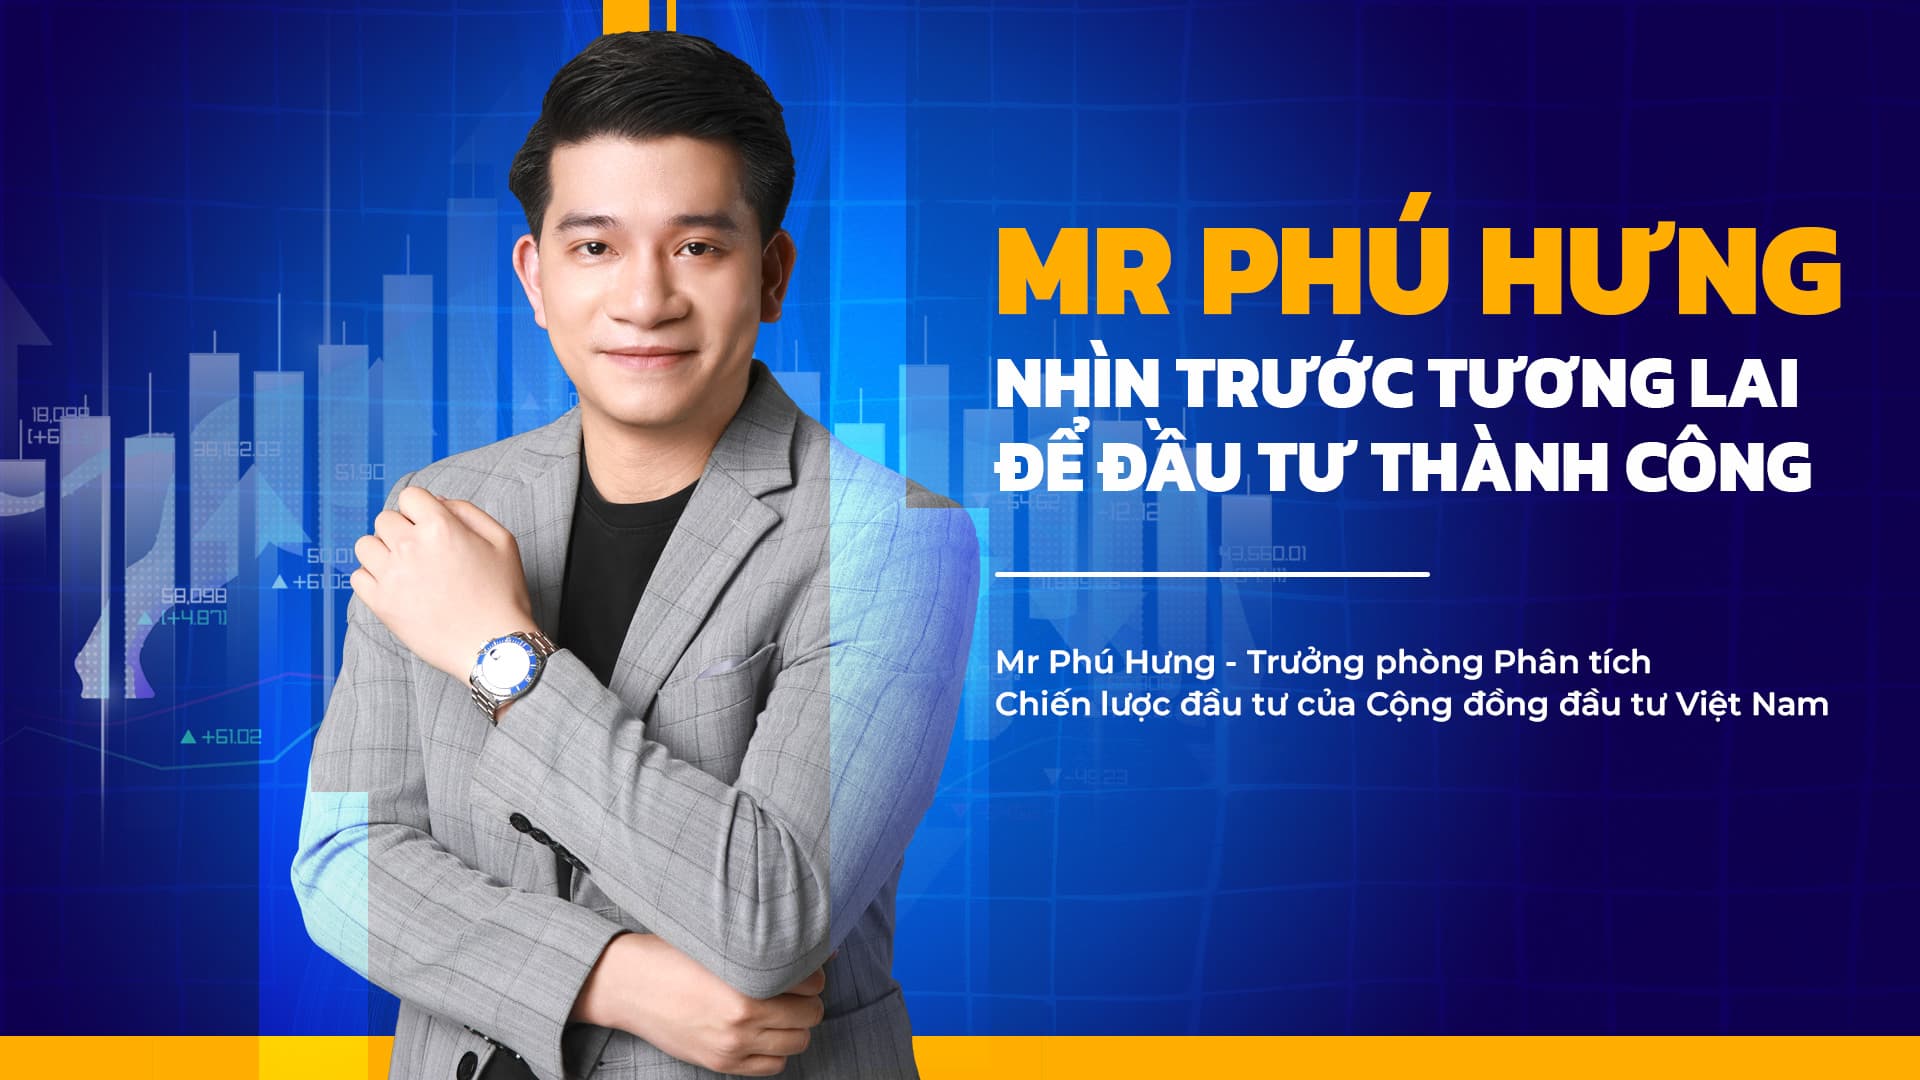 Mr Phú Hưng - Nhìn trước tương lai để đầu tư thành công